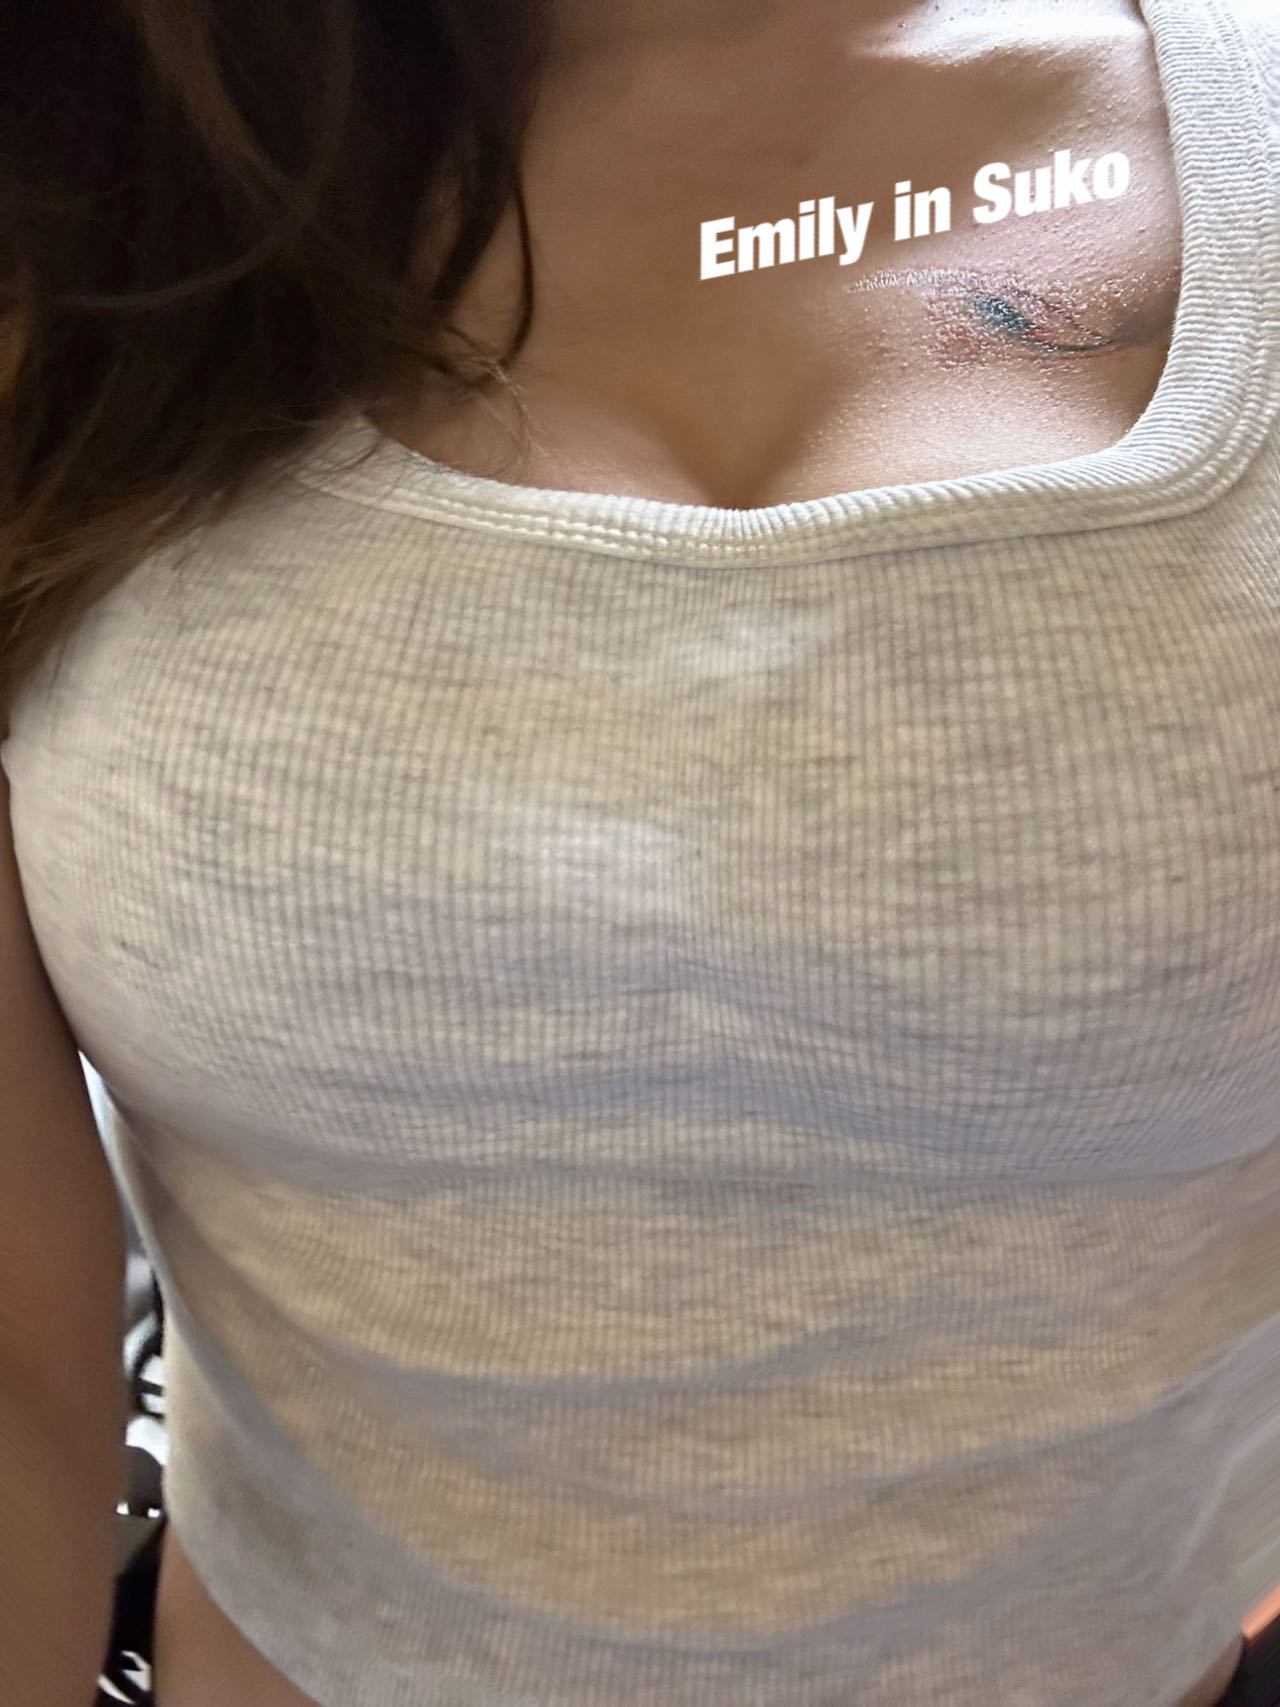 Emily.jpg